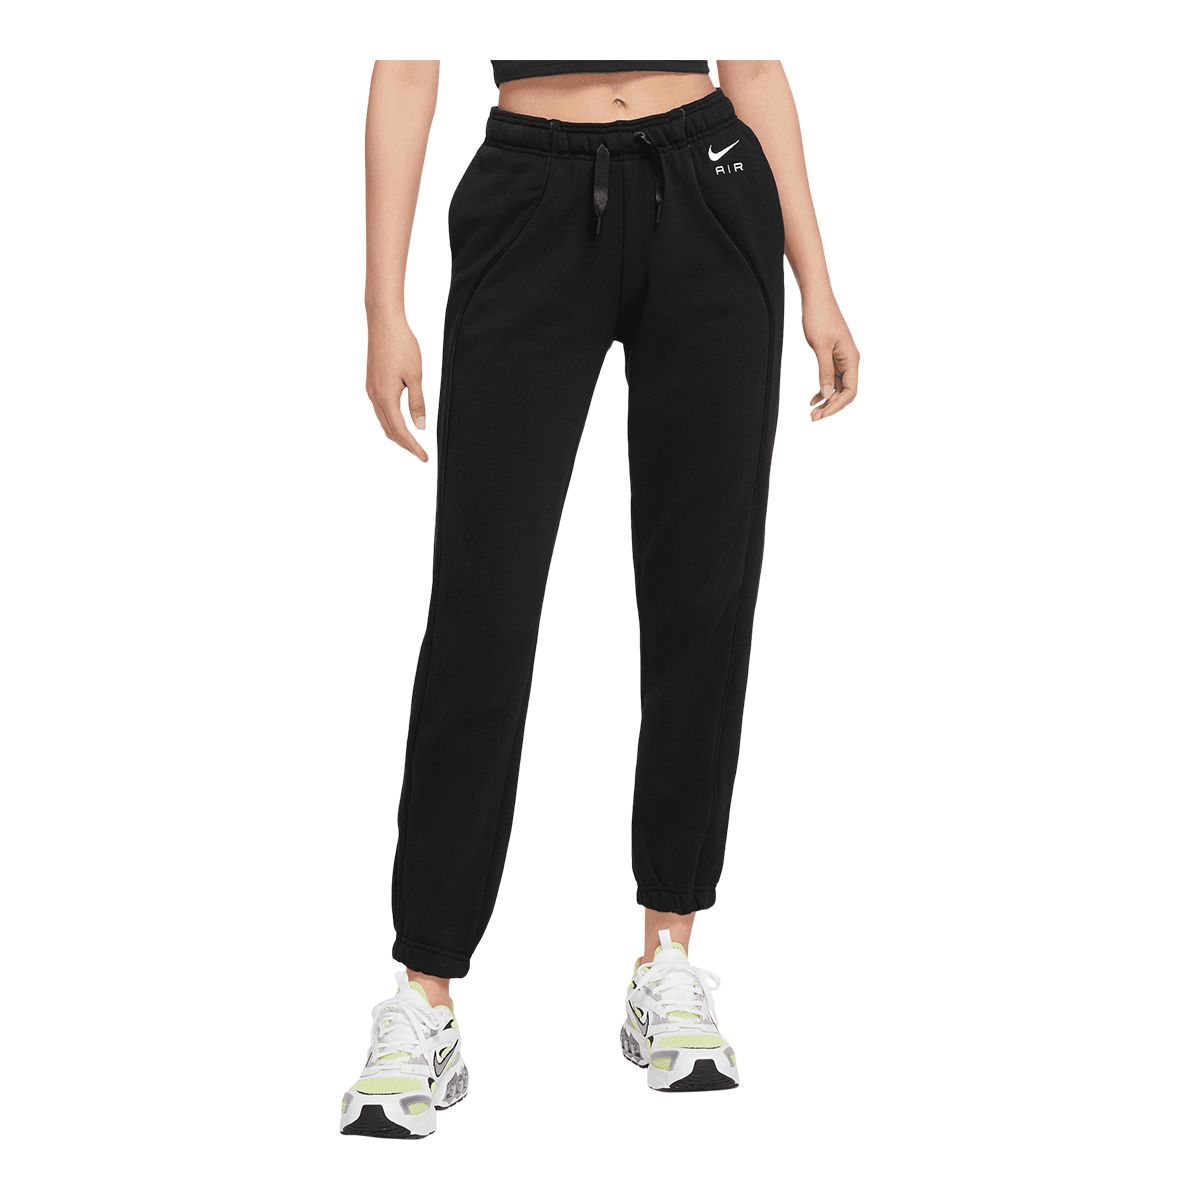 Nike Women's Sportswear Air Fleece Jogger Pants  Casual Lounge Mid Rise